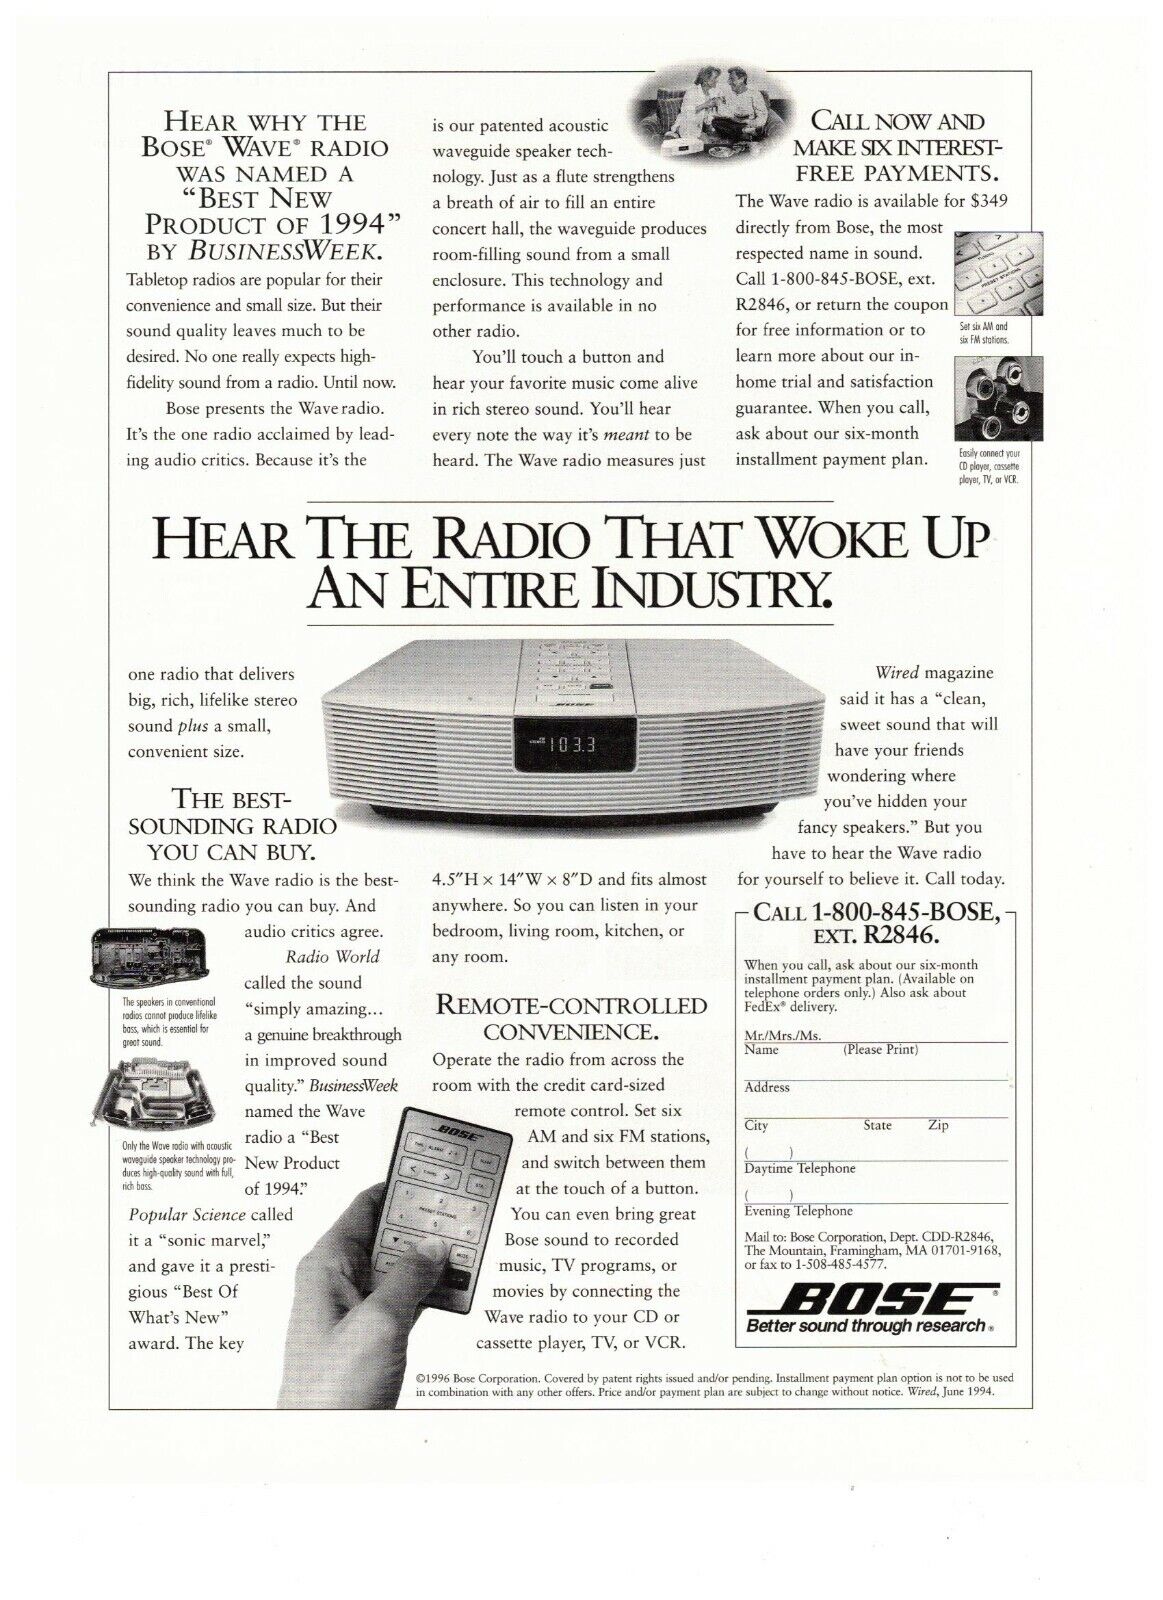 1997 Bose Wave Radio Woke Up An Industry Vintage Print Advertisement